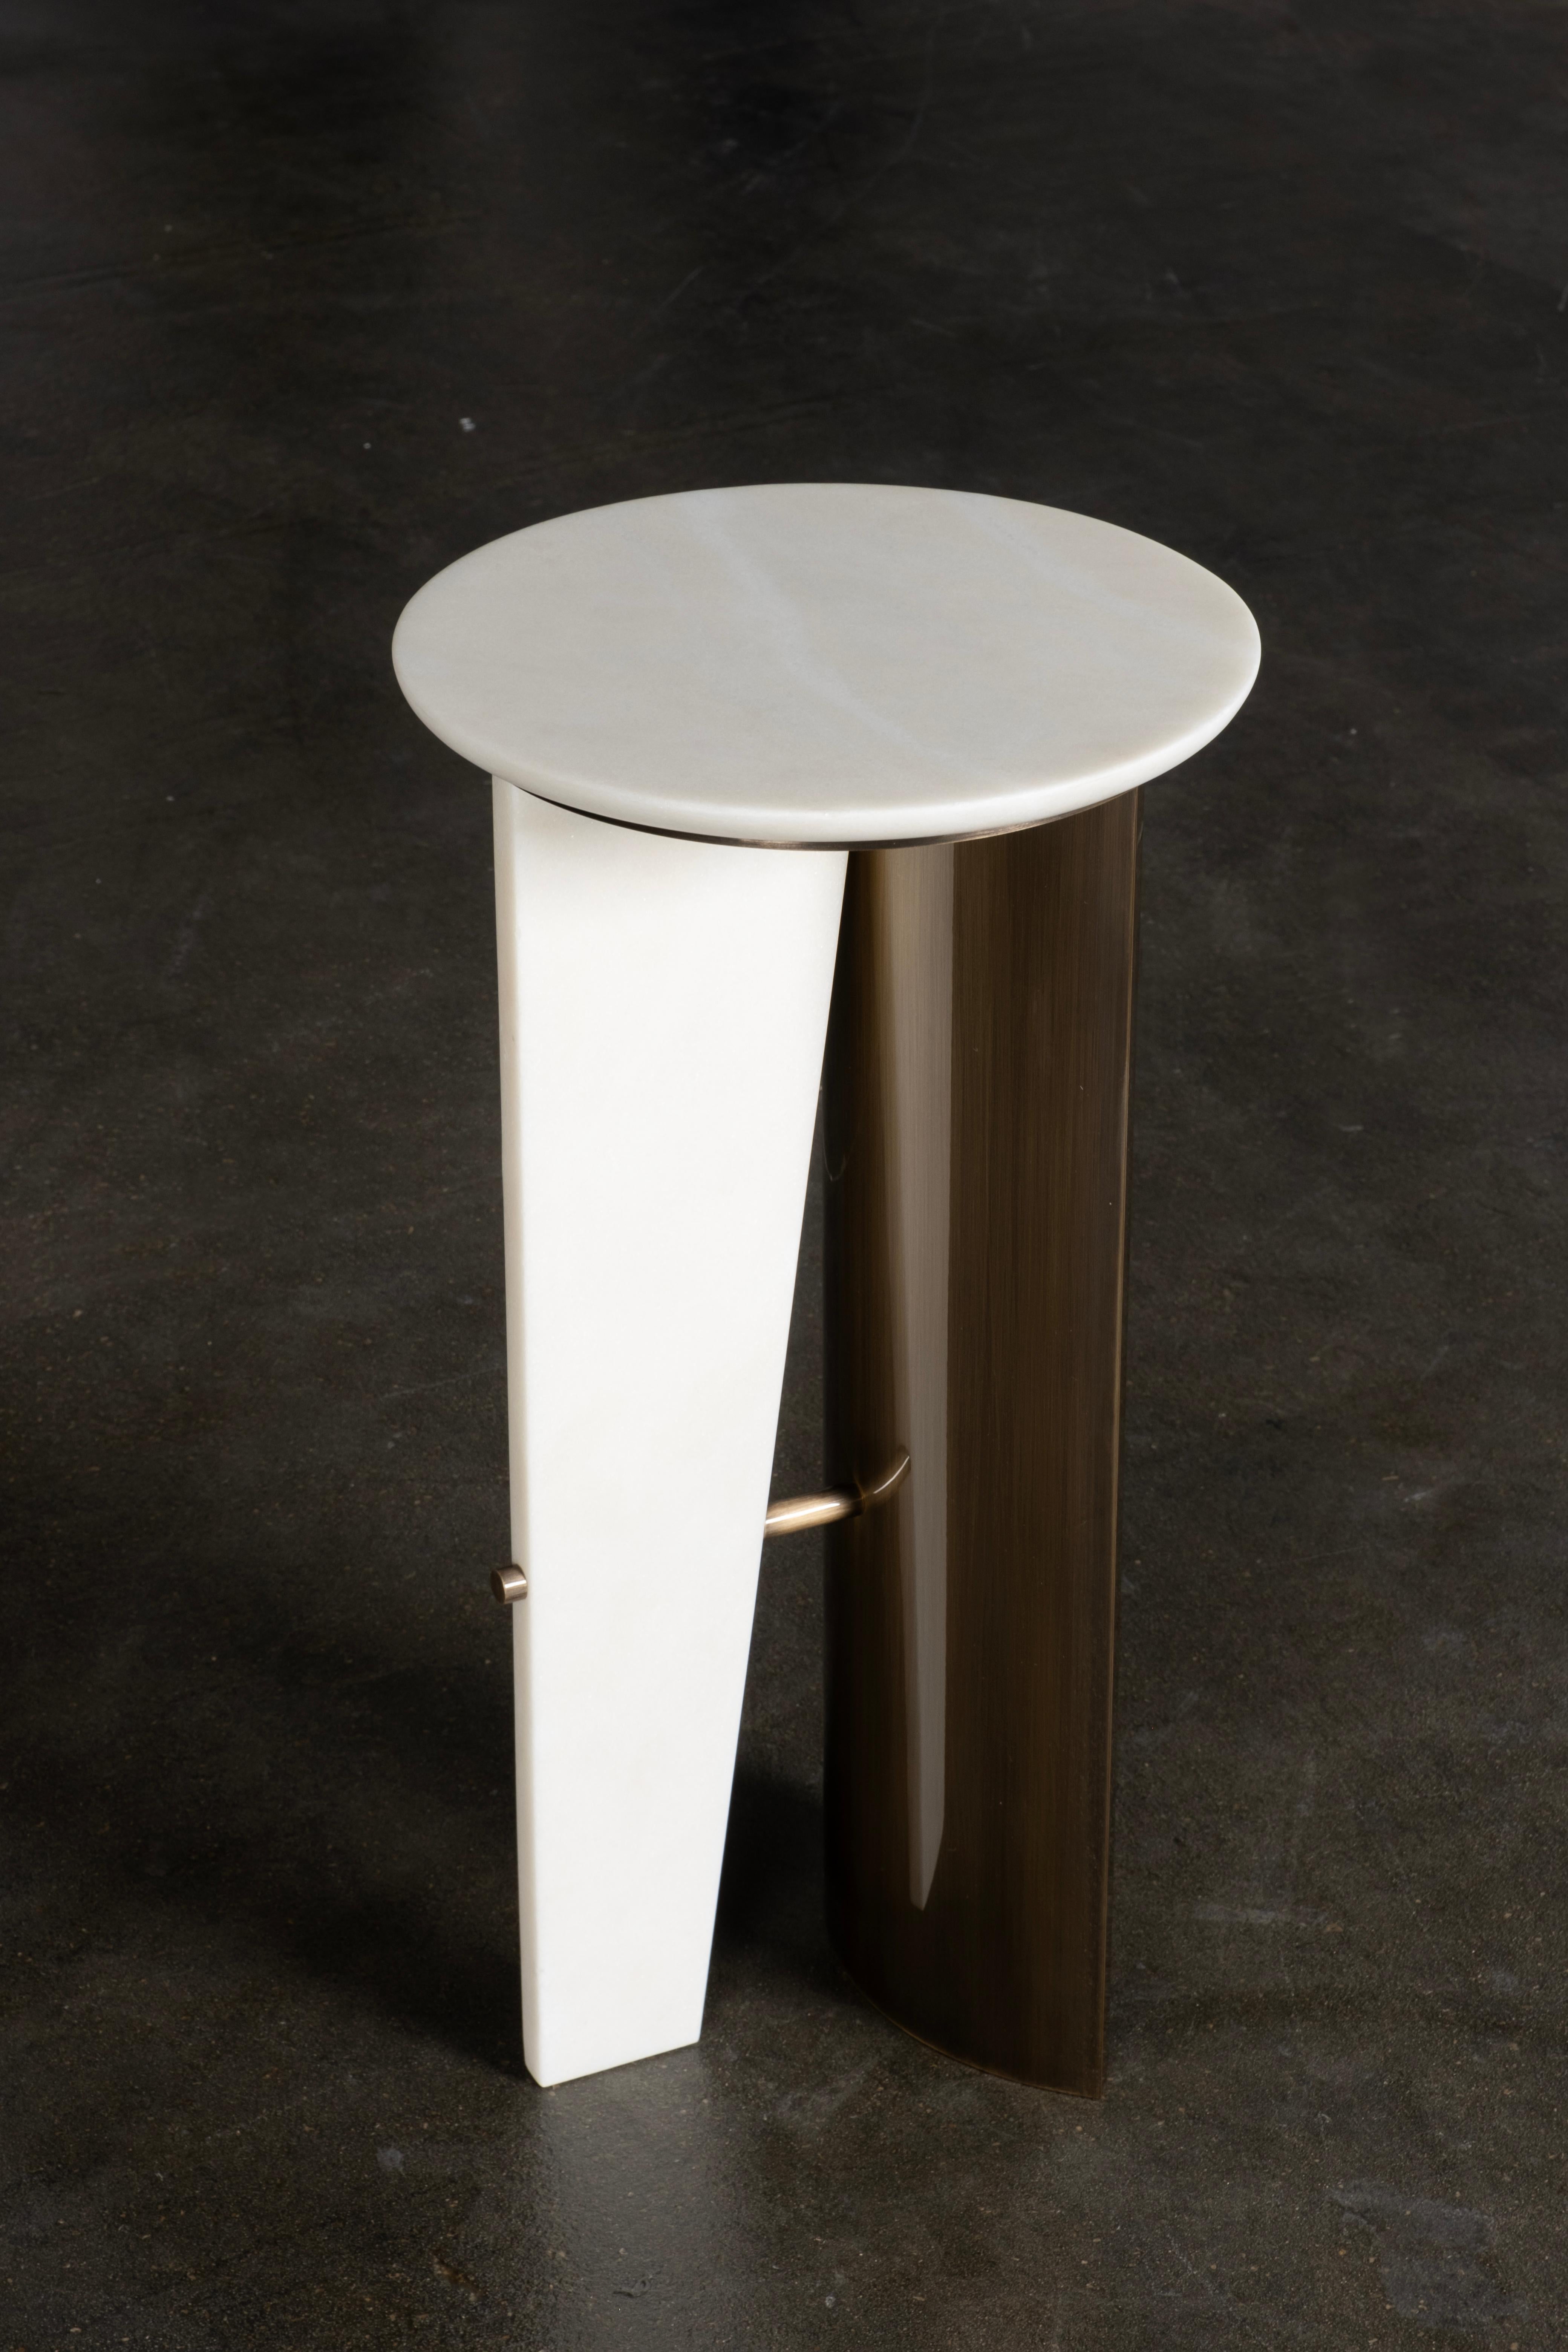 Foice Beistelltisch, Collection'S Contemporary, handgefertigt in Portugal - Europa von Greenapple.

Der Marmorbeistelltisch Foice verbindet nahtlos die Anklänge an die Jungsteinzeit mit zeitgenössischem Design. Der weiße Farbton und die subtile